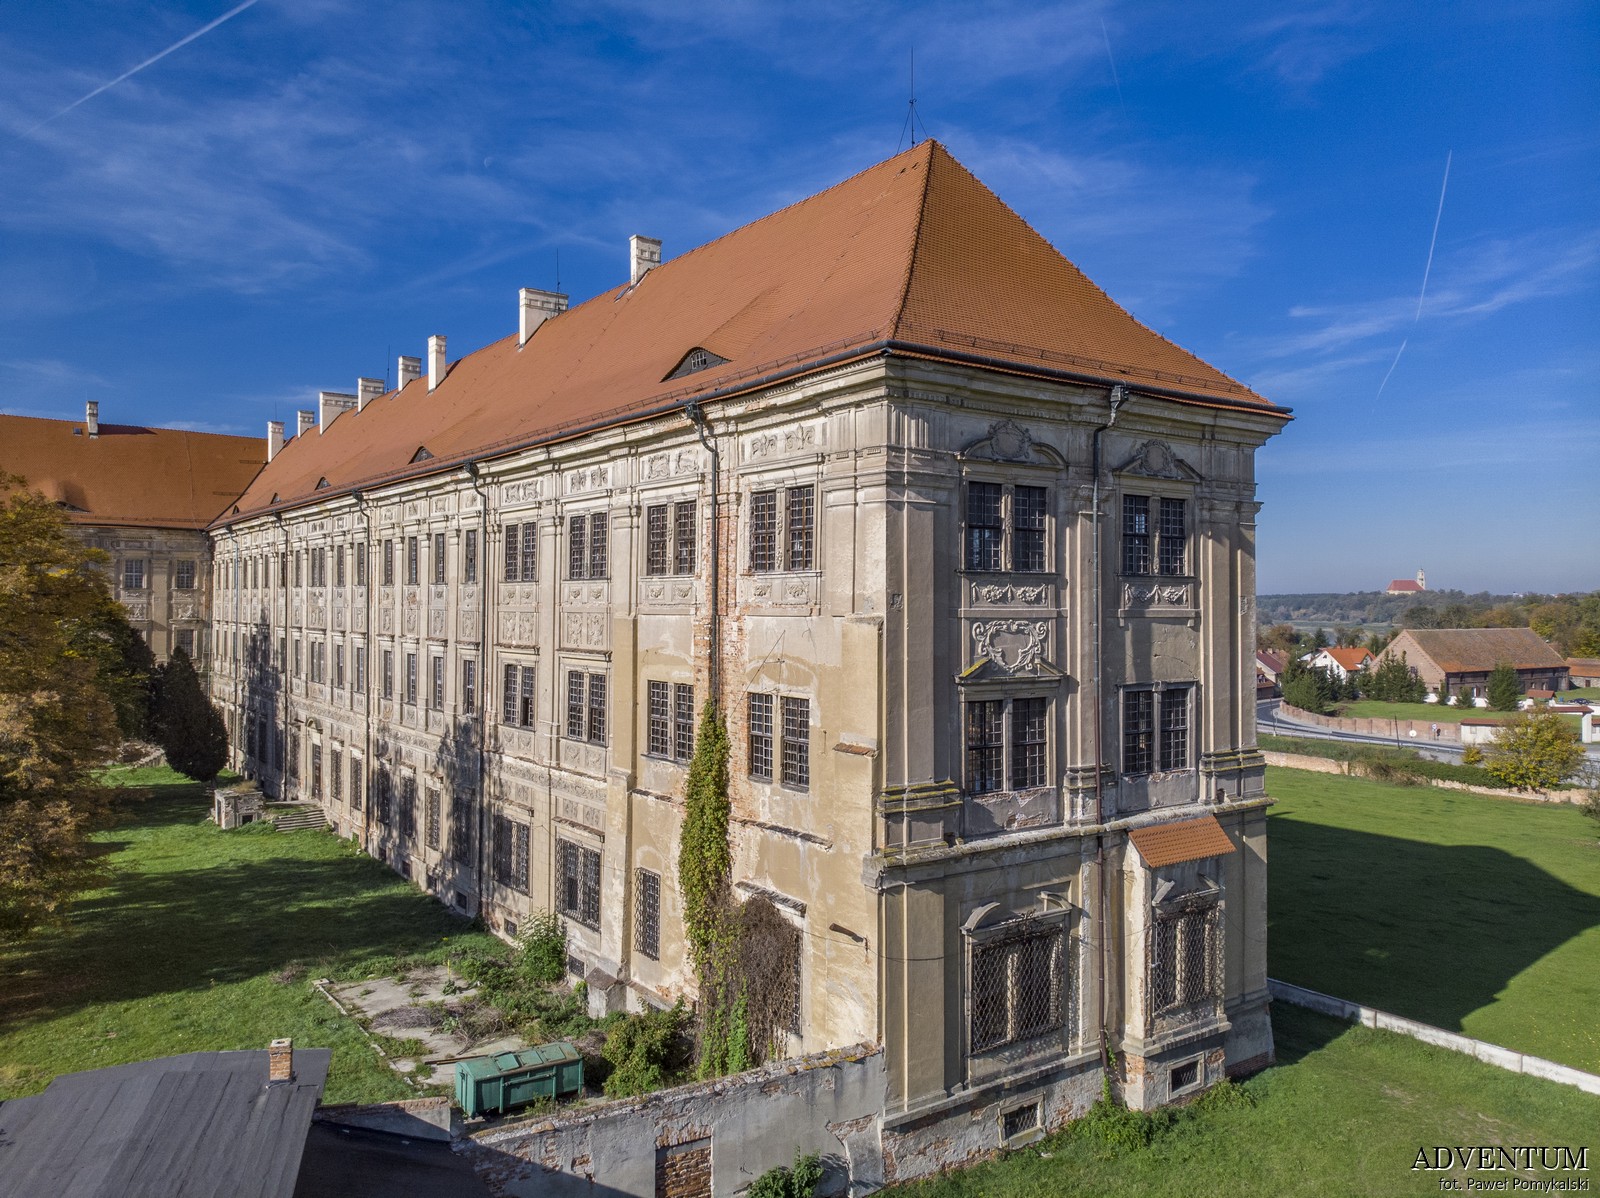 Pałac opacki Klasztor Zwiedzanie Kościół Imprezy Atrakcje Dolny śląsk Solnośląskie pomysł wycieczka